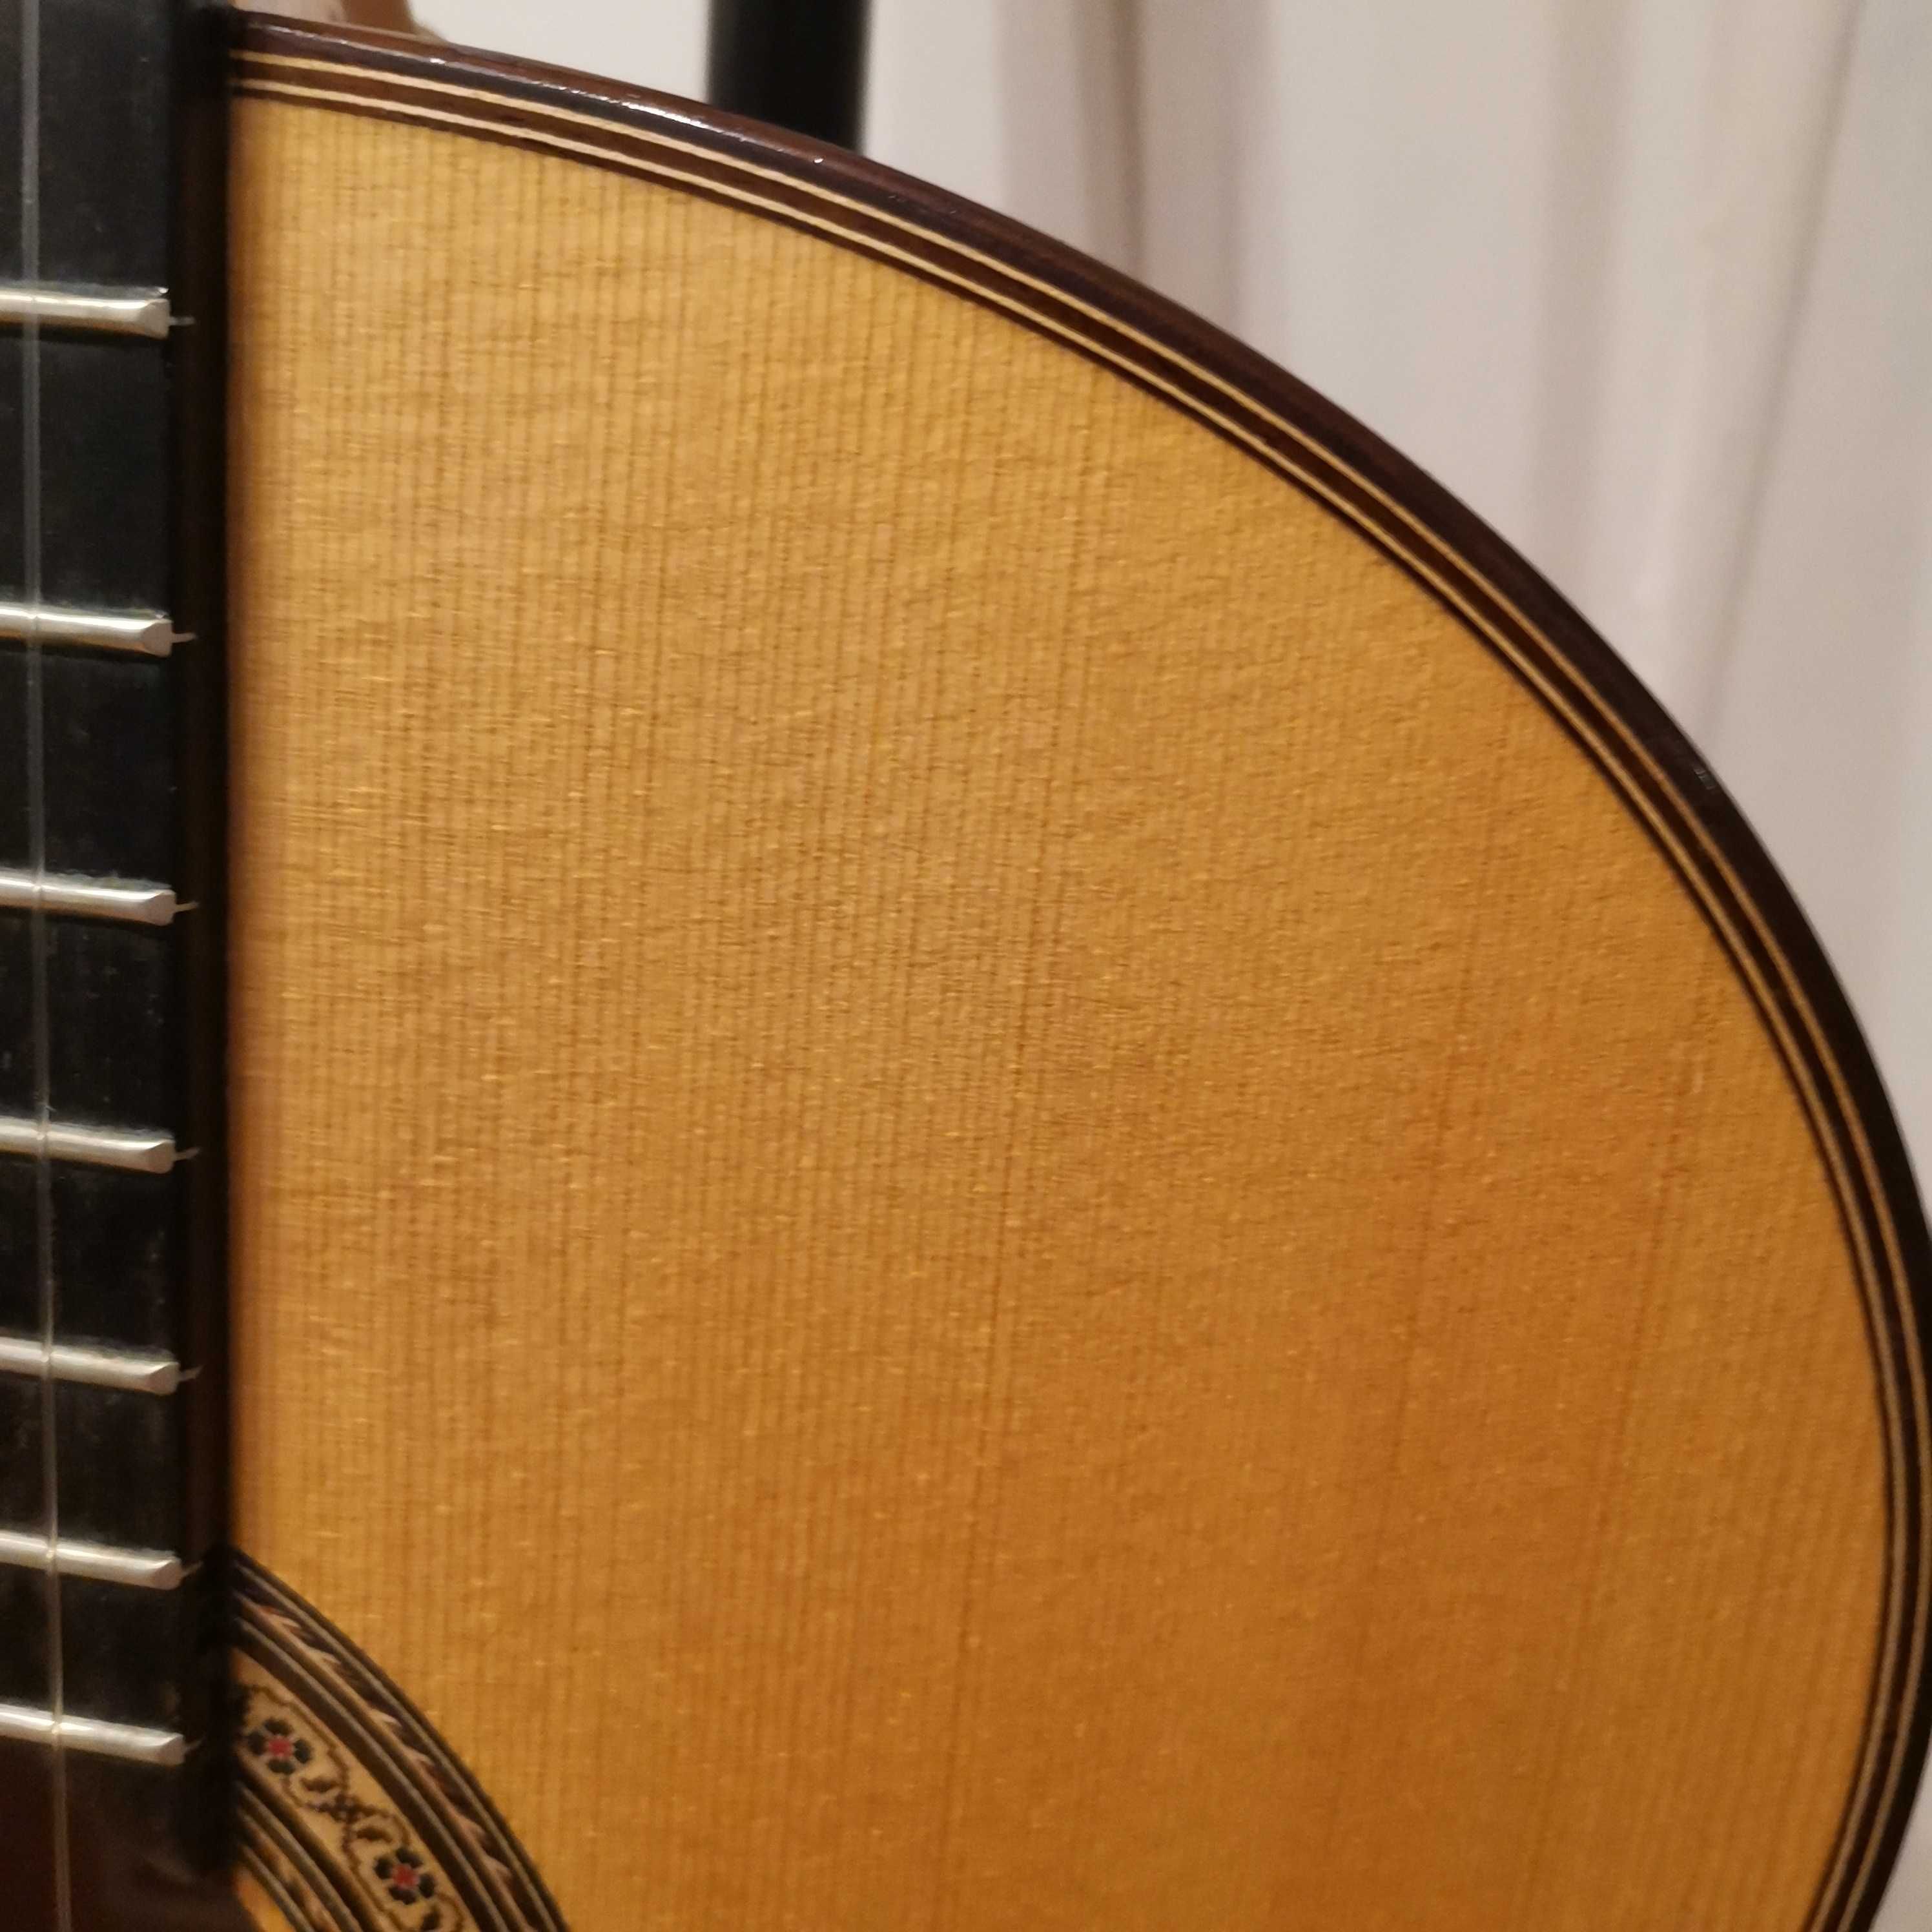 Gitara lutnicza klasyczna/flamenco z Granady